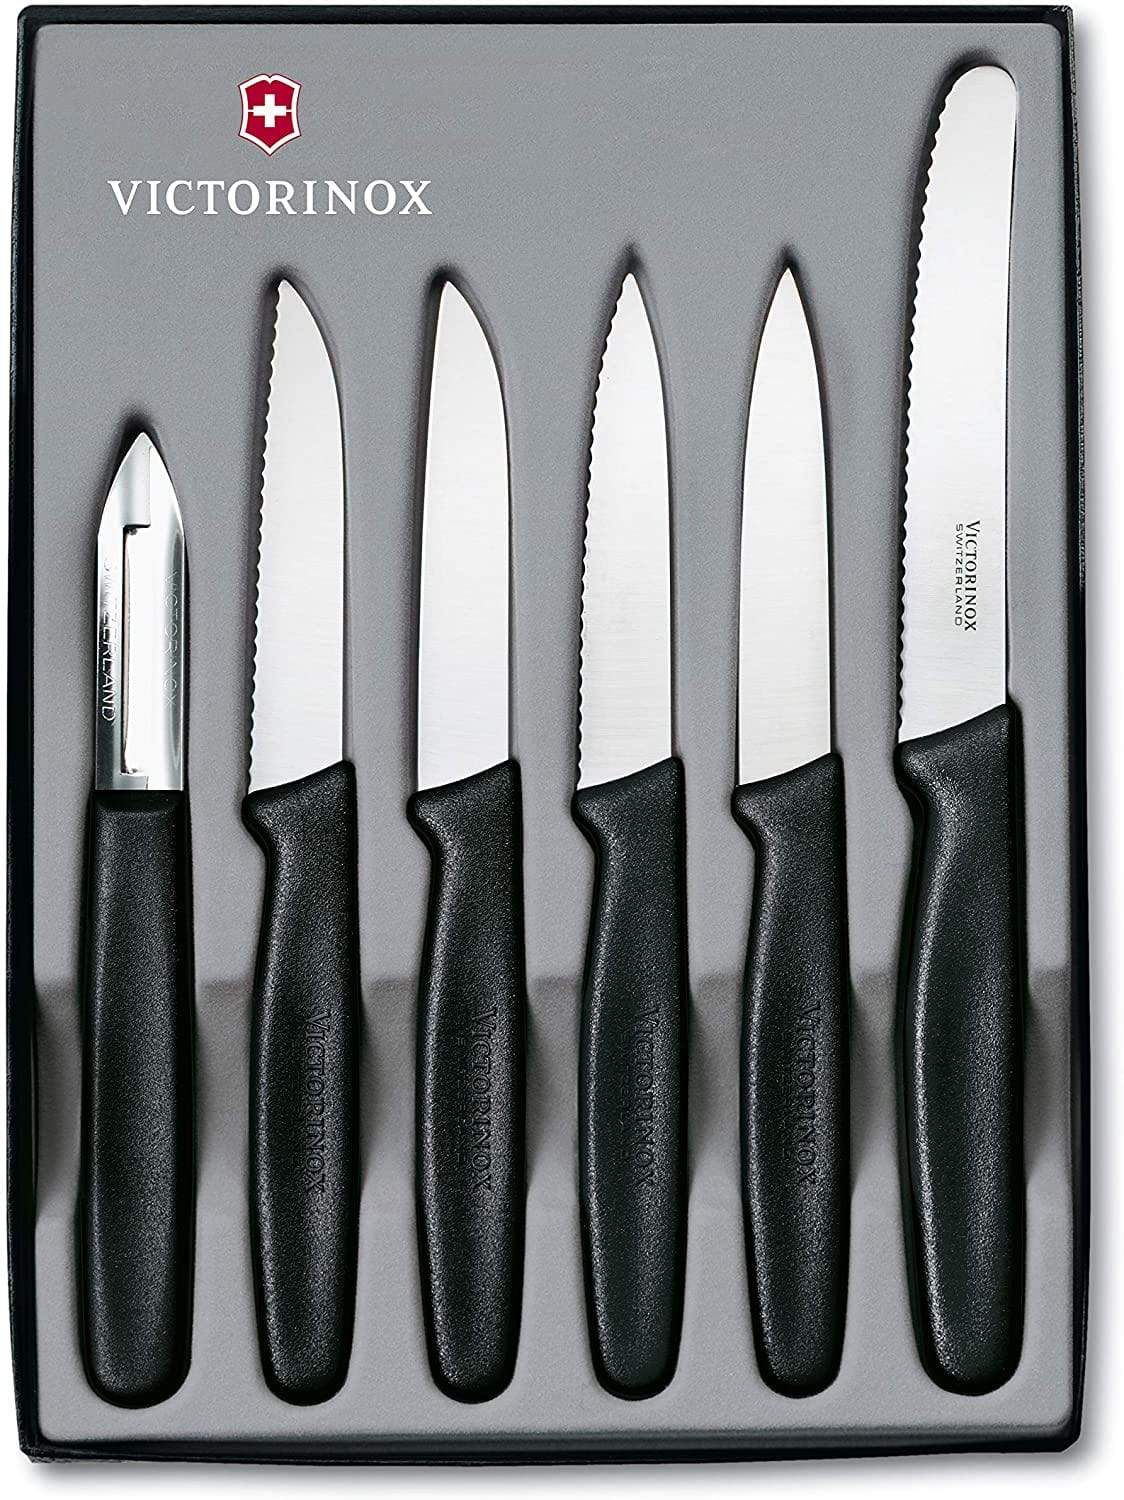 فيكتورينوكس – طقم سكين بارينج 6 قطع – أسود - 5.1113.6